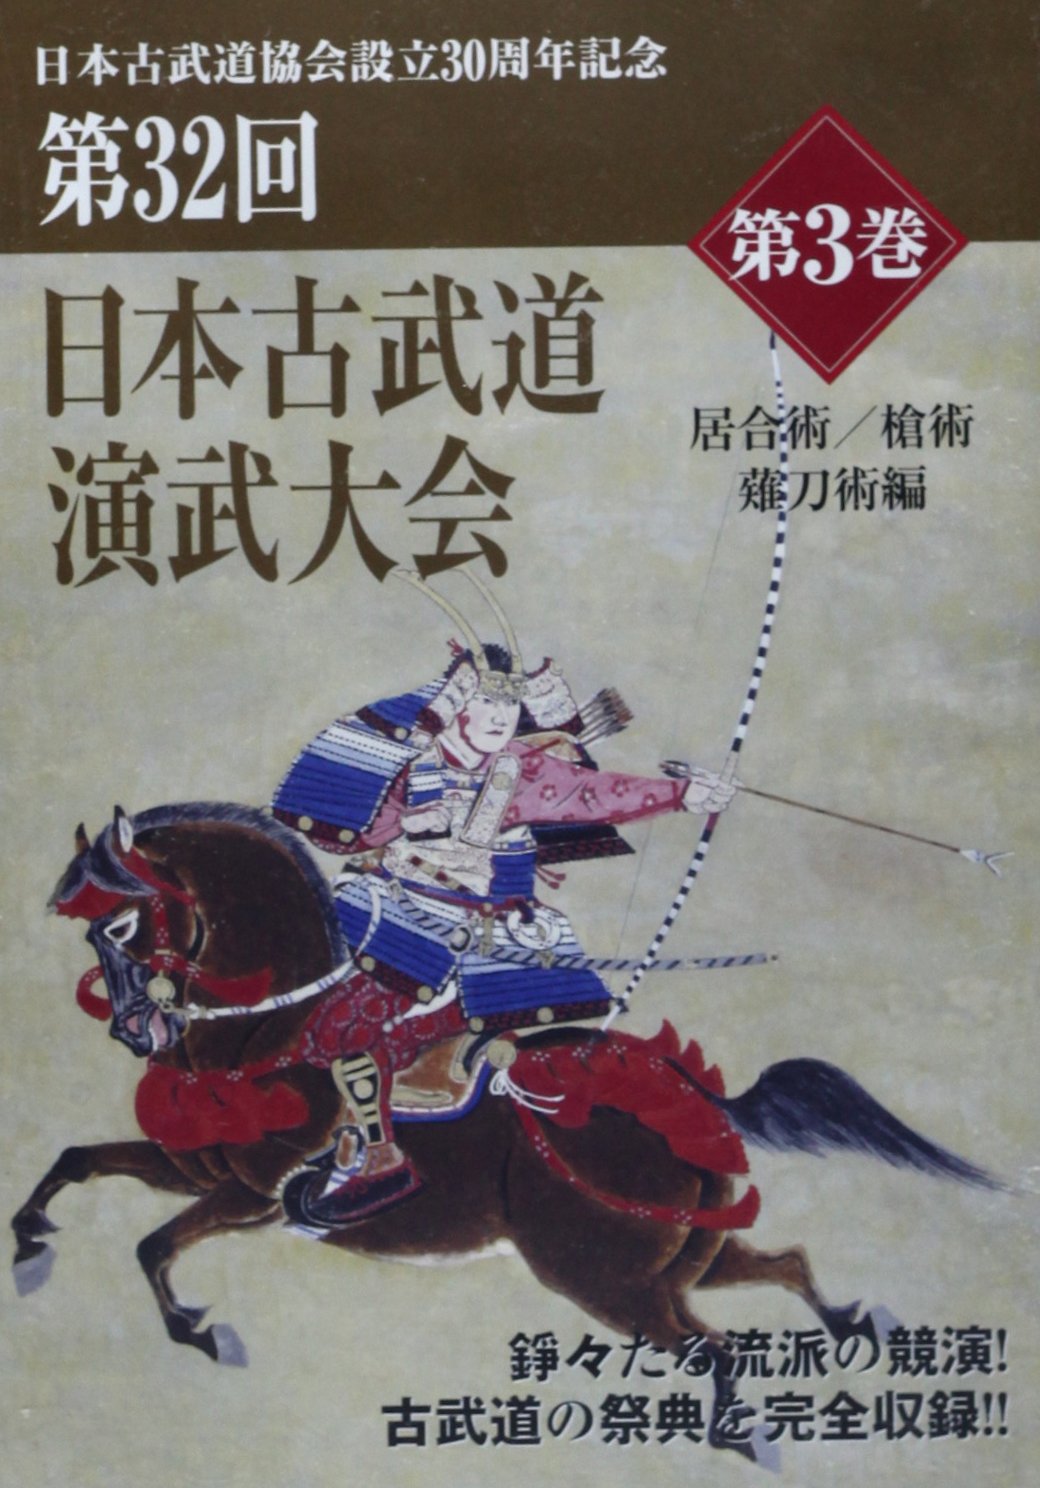 32nd Japan Kobudo Embu Taikai DVD 3: Iai, Naginata, Sojutsu (Nihon Kobudo Series) - Budovideos Inc